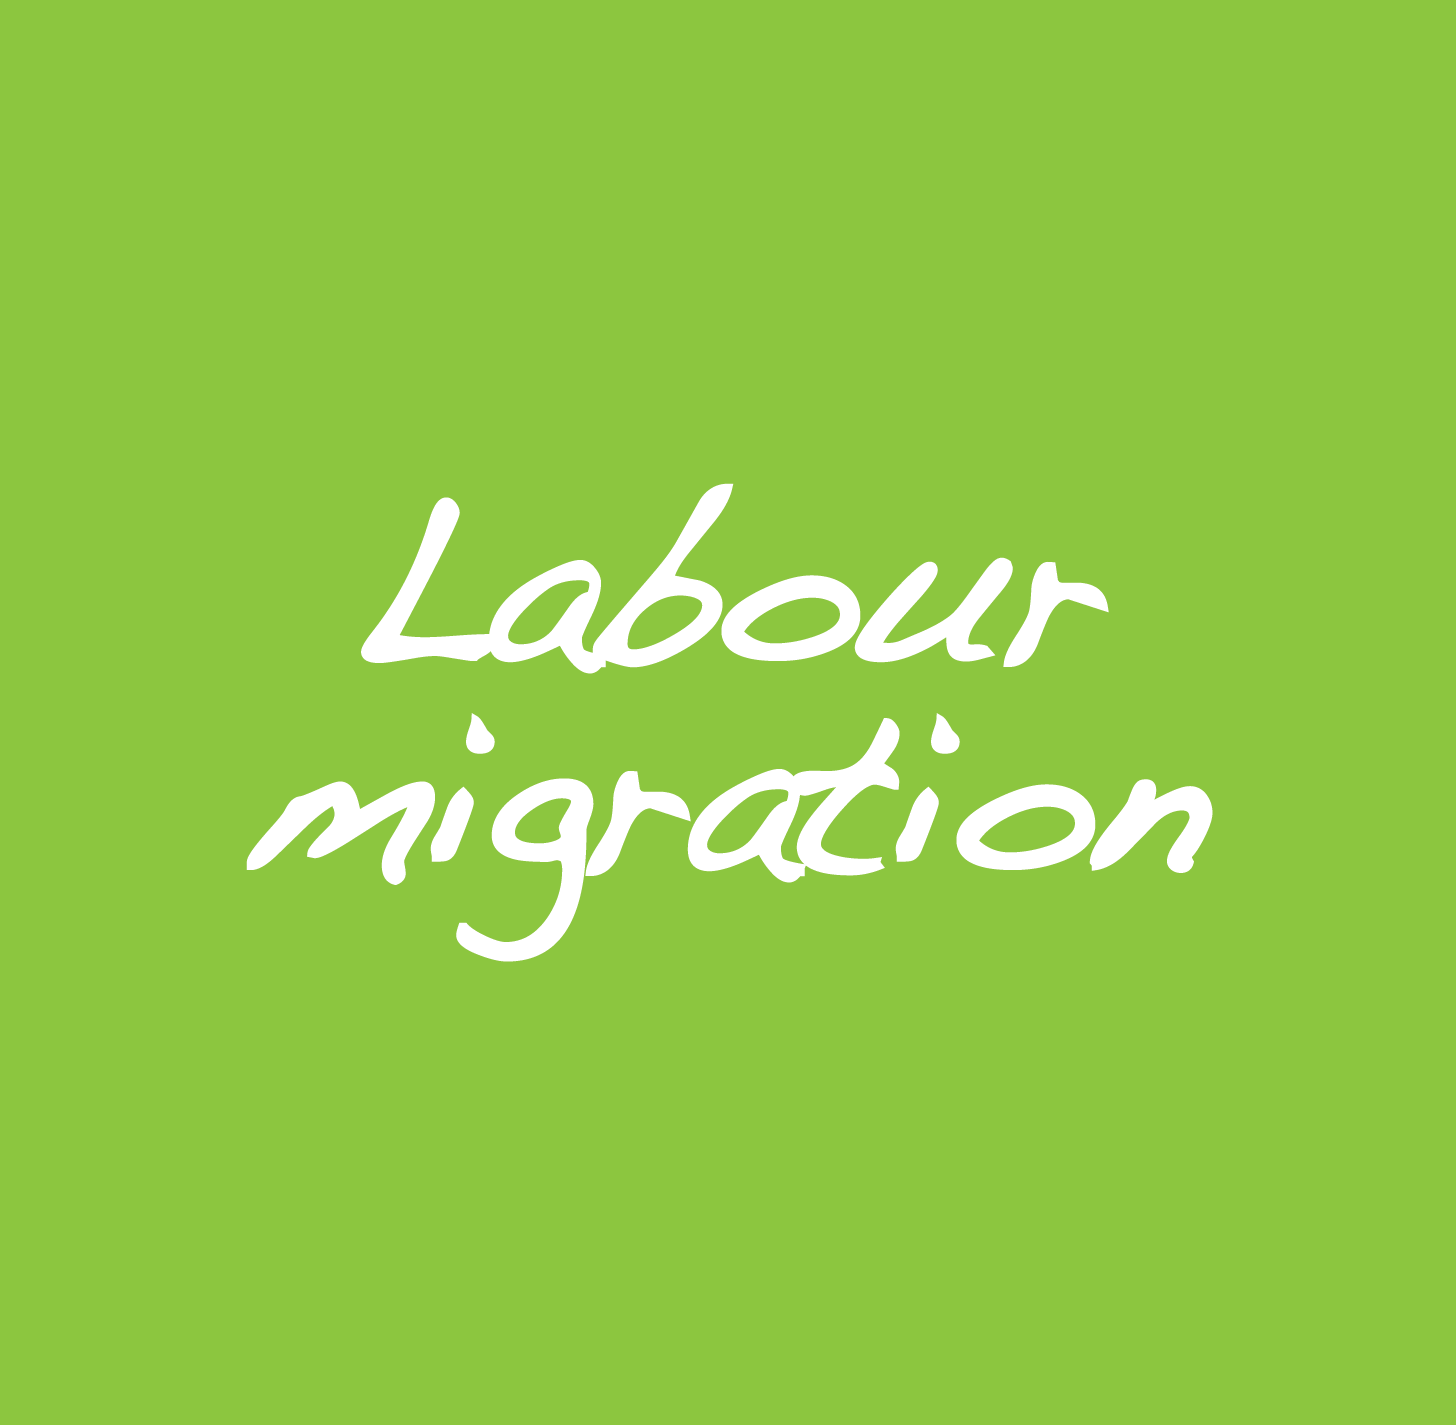 Labour migration